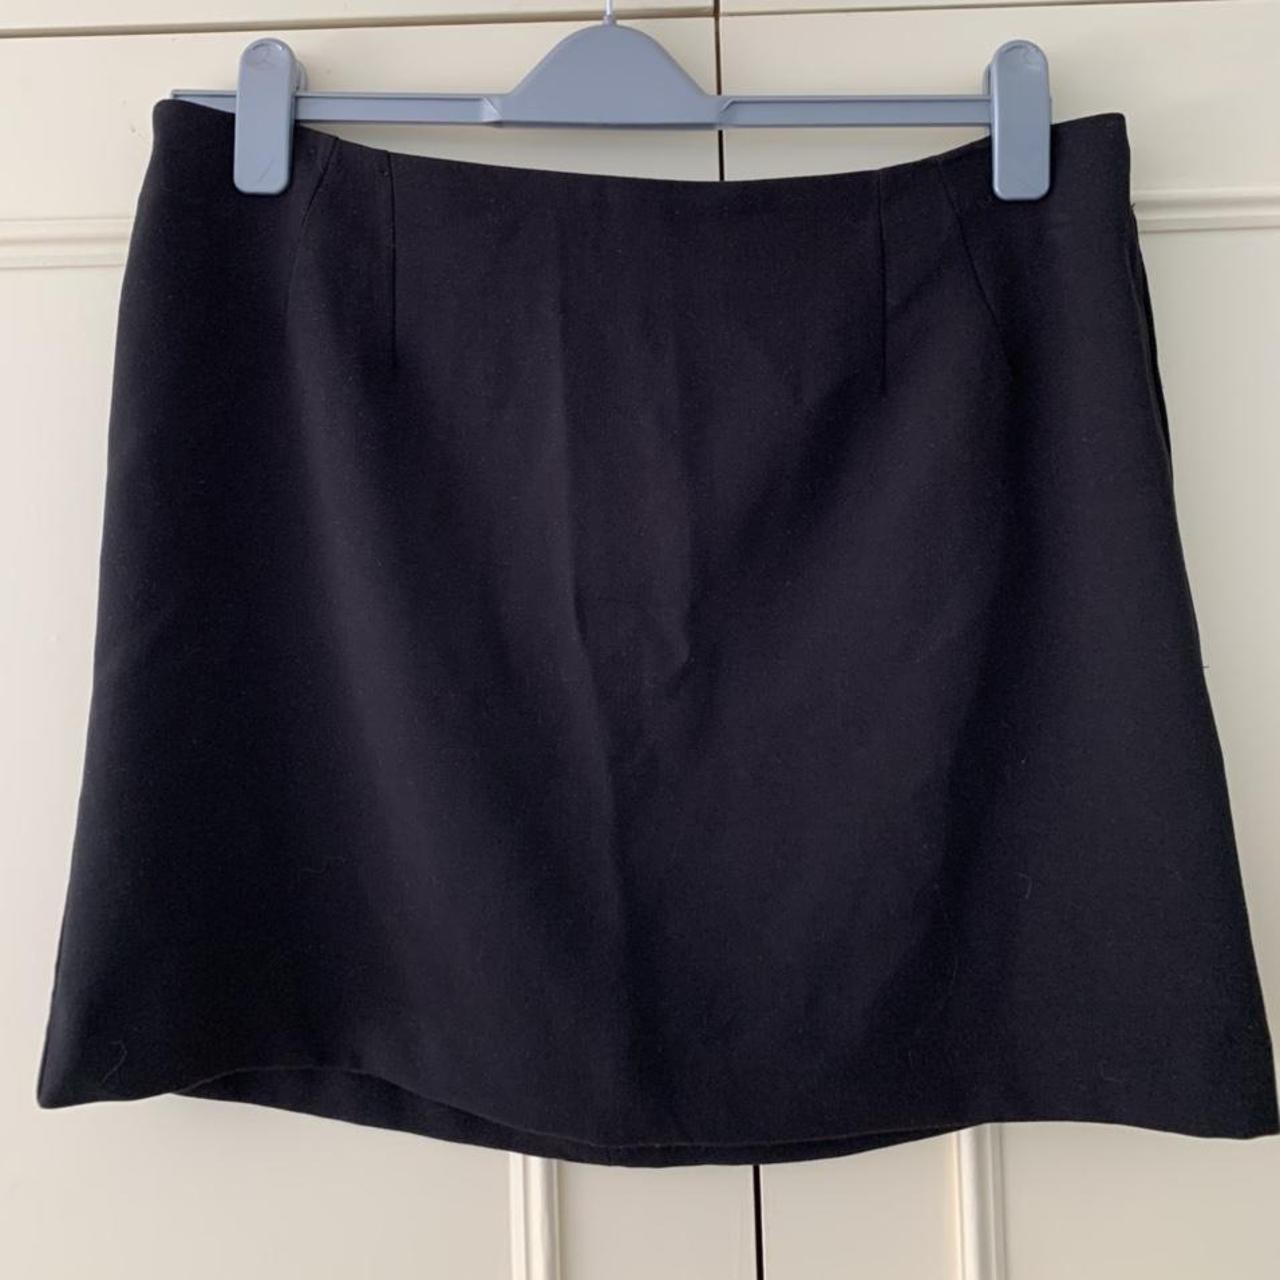 New Look black smart skirt with zip • New Look... - Depop